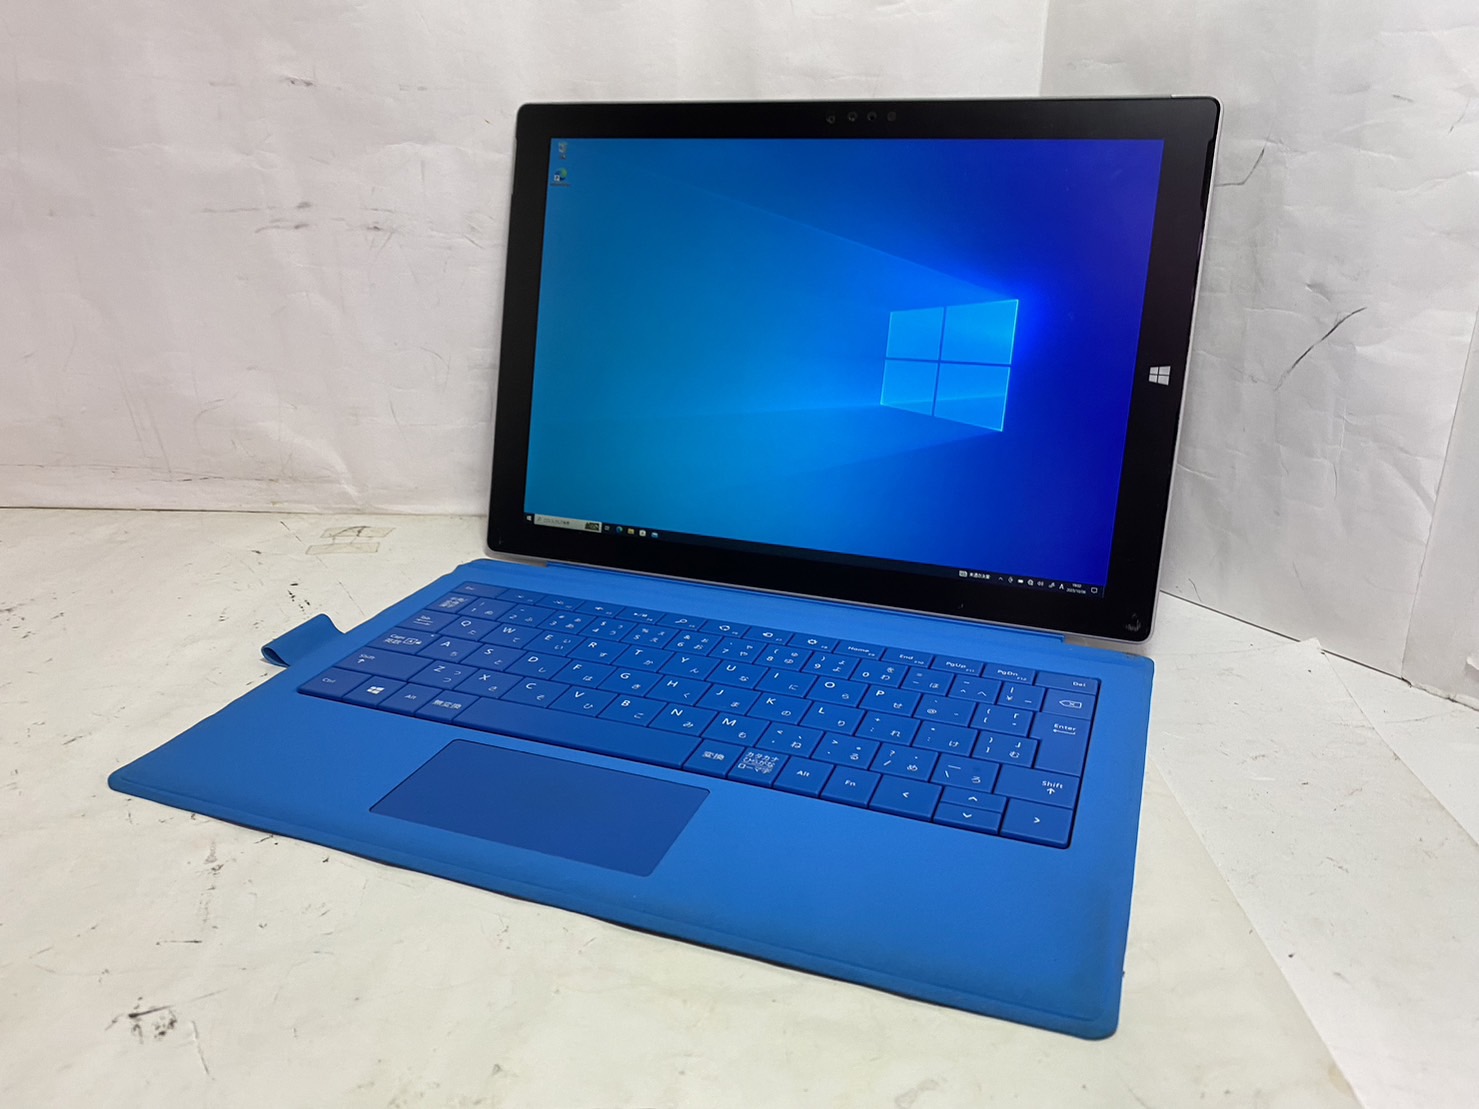 Microsoft(マイクロソフト) Surface Pro 3 1631の激安通販 - パソコン ...